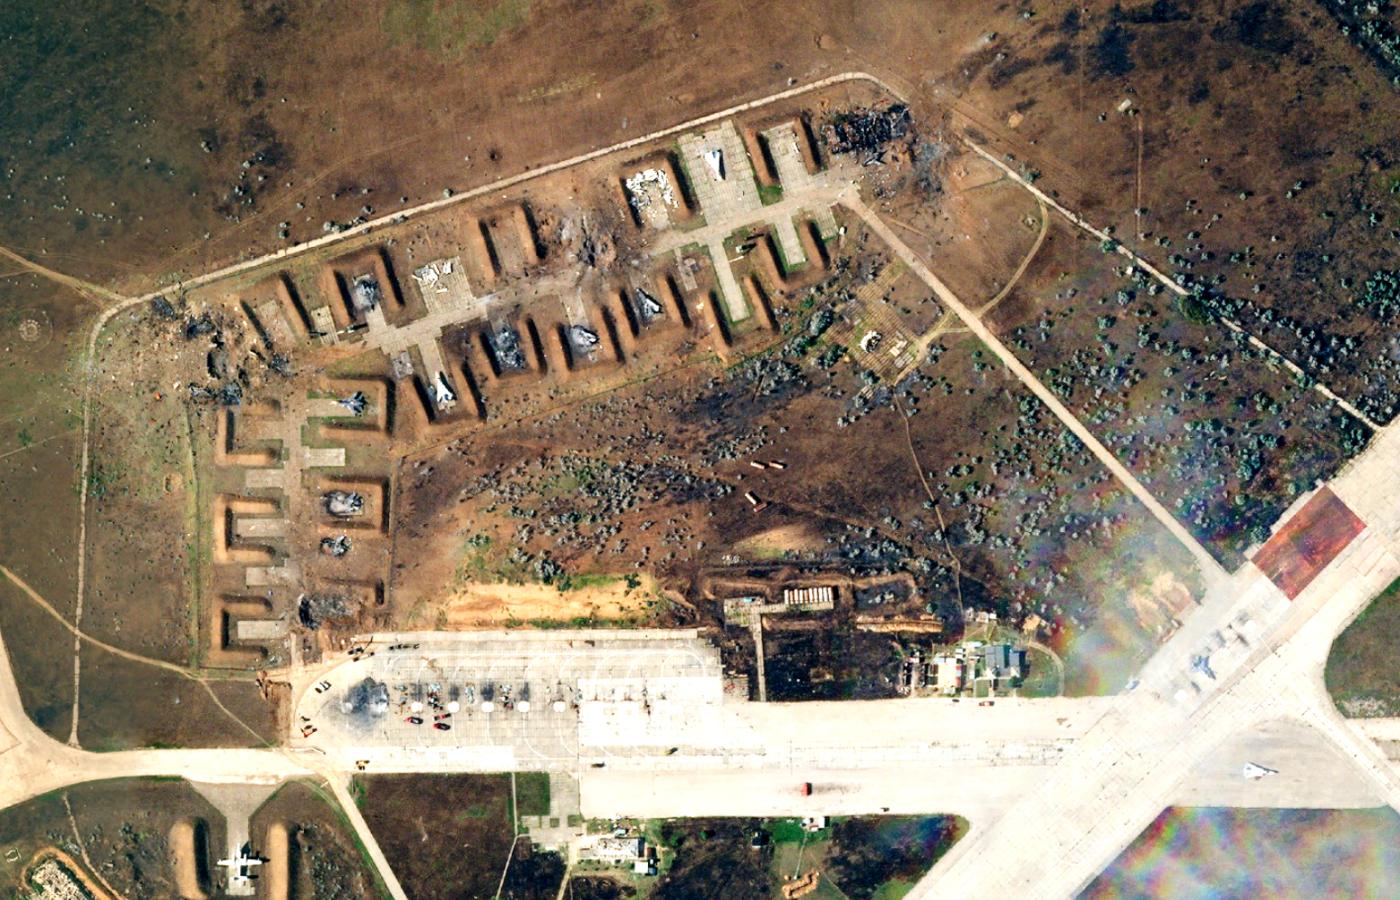 Zdjęcie satelitarne zniszczonej rosyjskiej bazy lotniczej Saki na Krymie